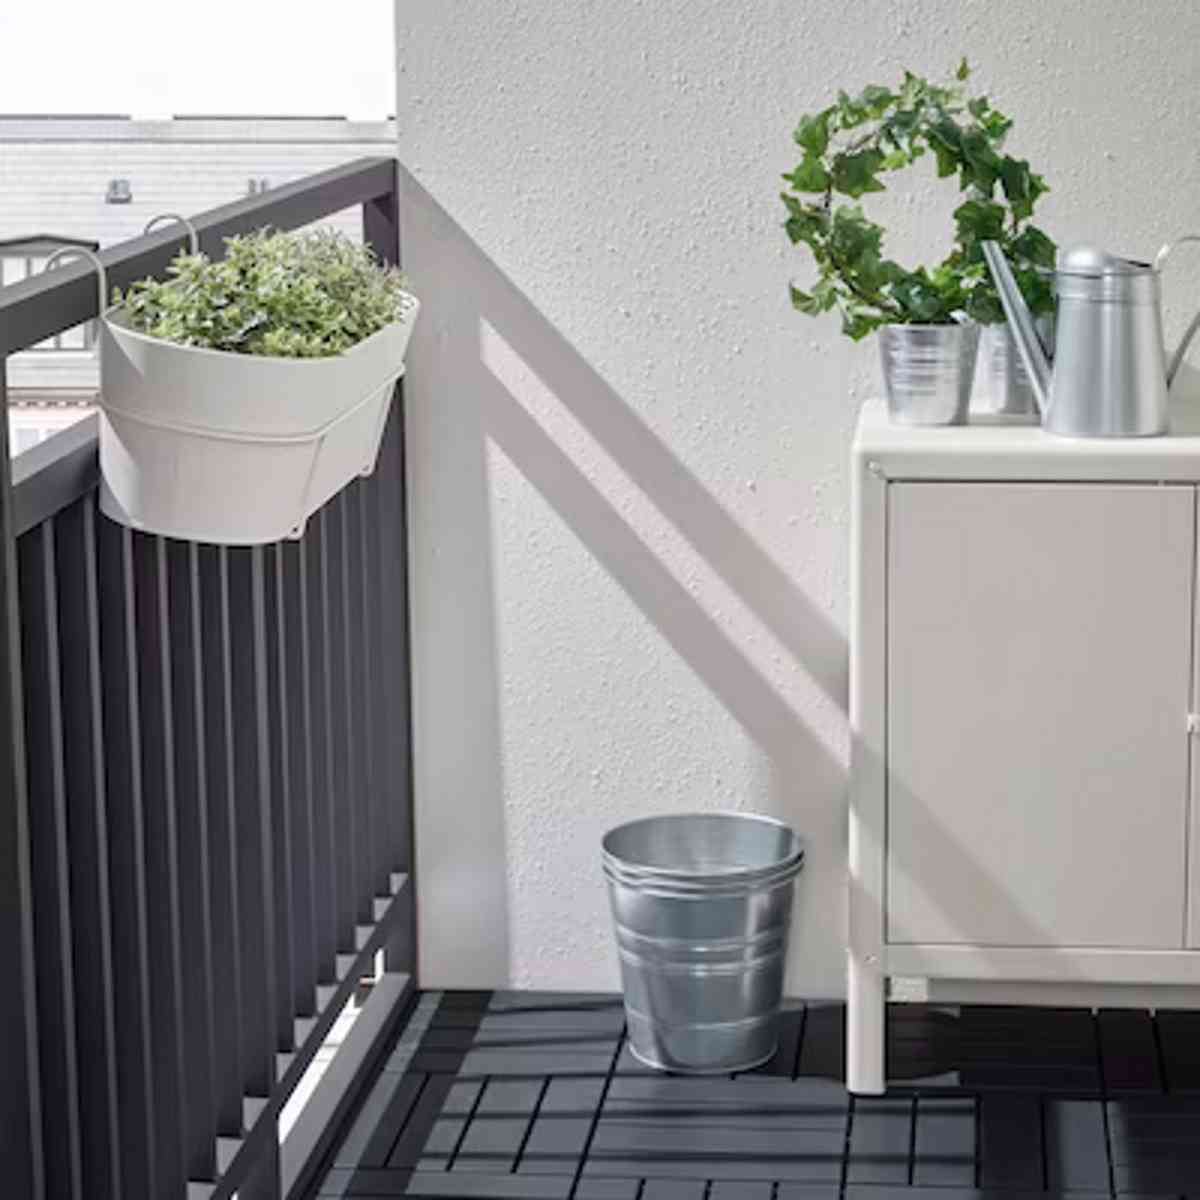 Maceteros y plantas artificiales de Ikea para embellecer interiores esta primavera